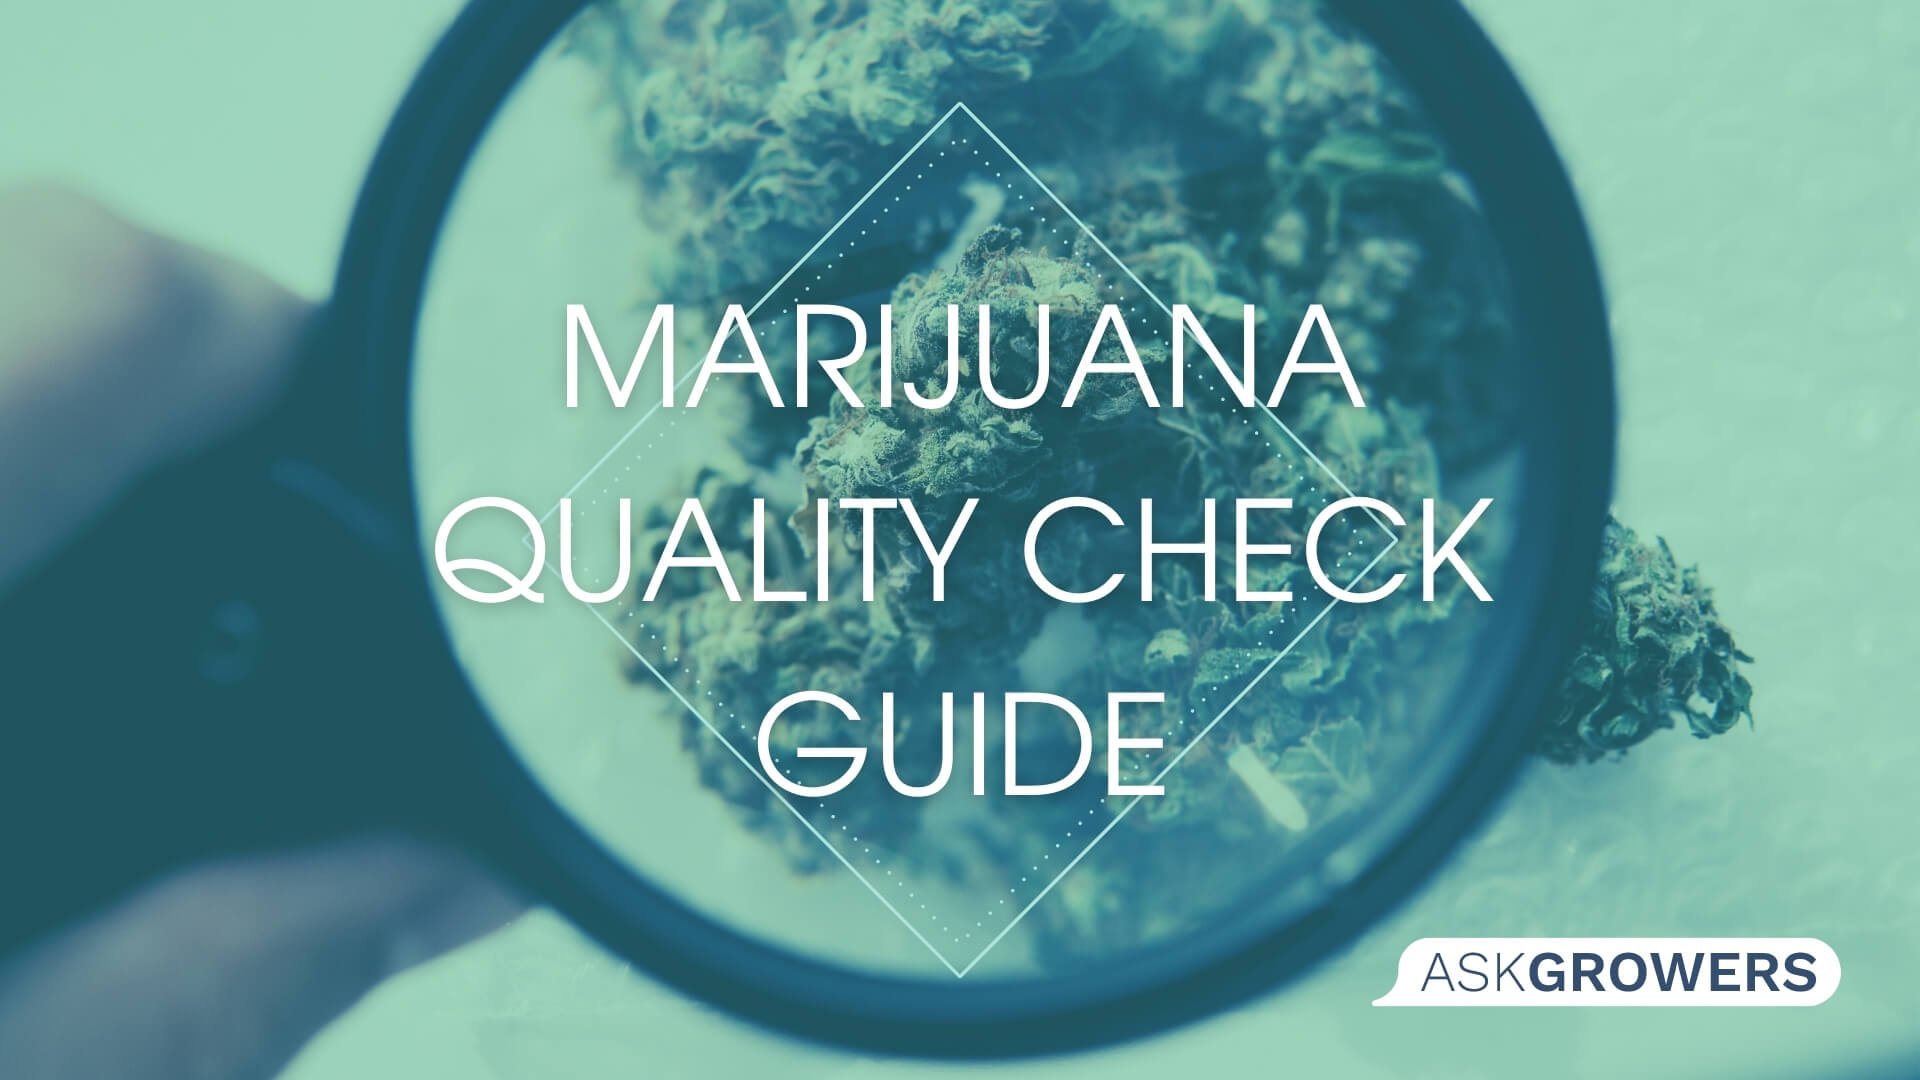 Guide to Check the Marijuana Quality